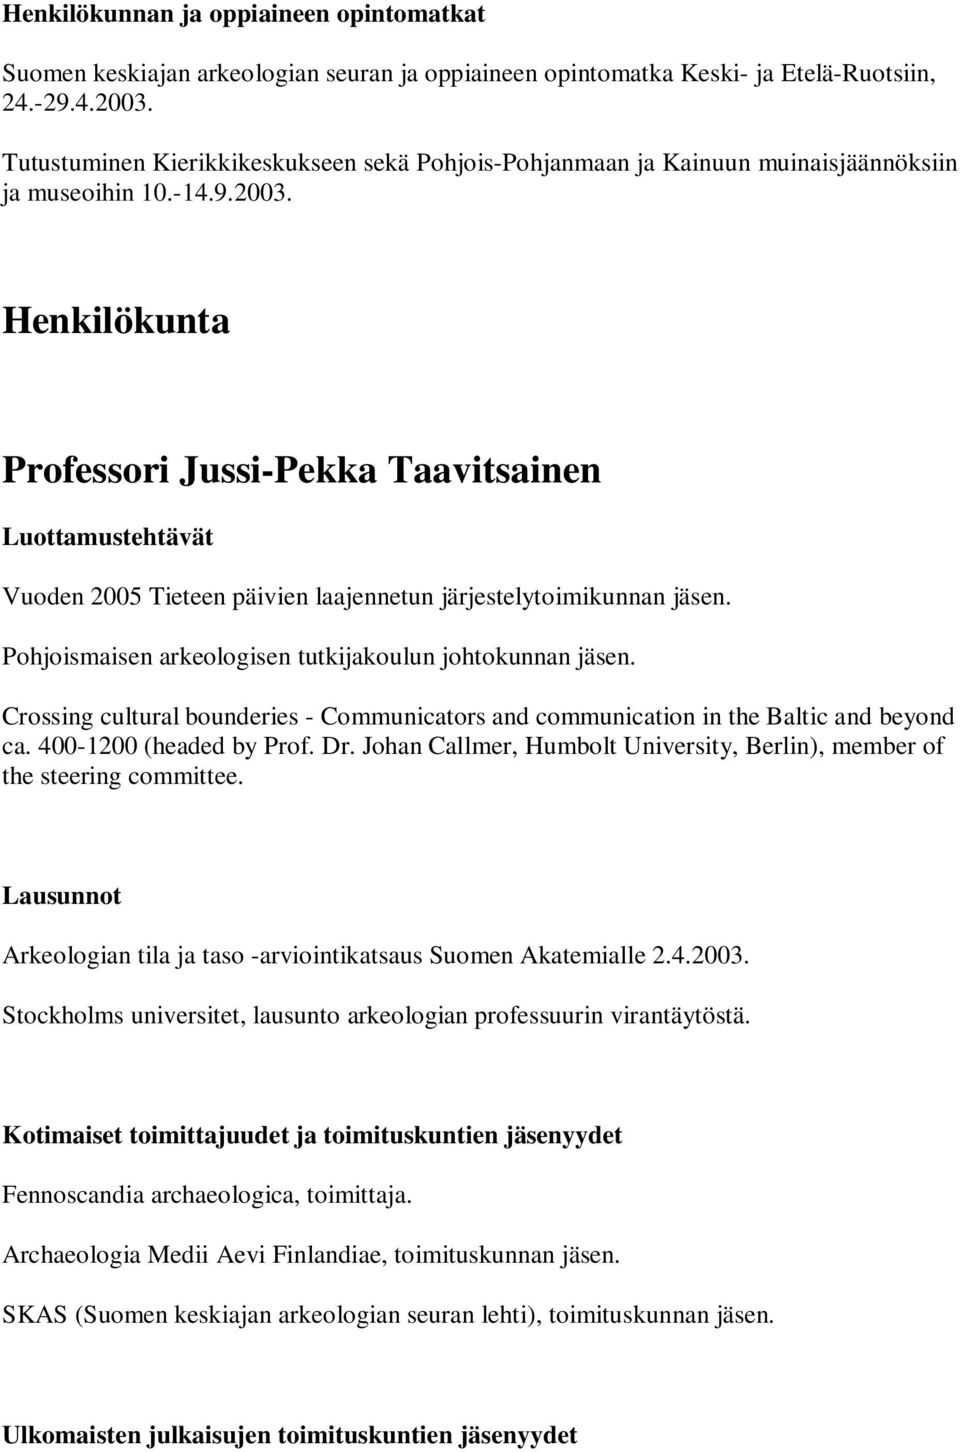 Henkilökunta Professori Jussi-Pekka Taavitsainen Luottamustehtävät Vuoden 2005 Tieteen päivien laajennetun järjestelytoimikunnan jäsen. Pohjoismaisen arkeologisen tutkijakoulun johtokunnan jäsen.